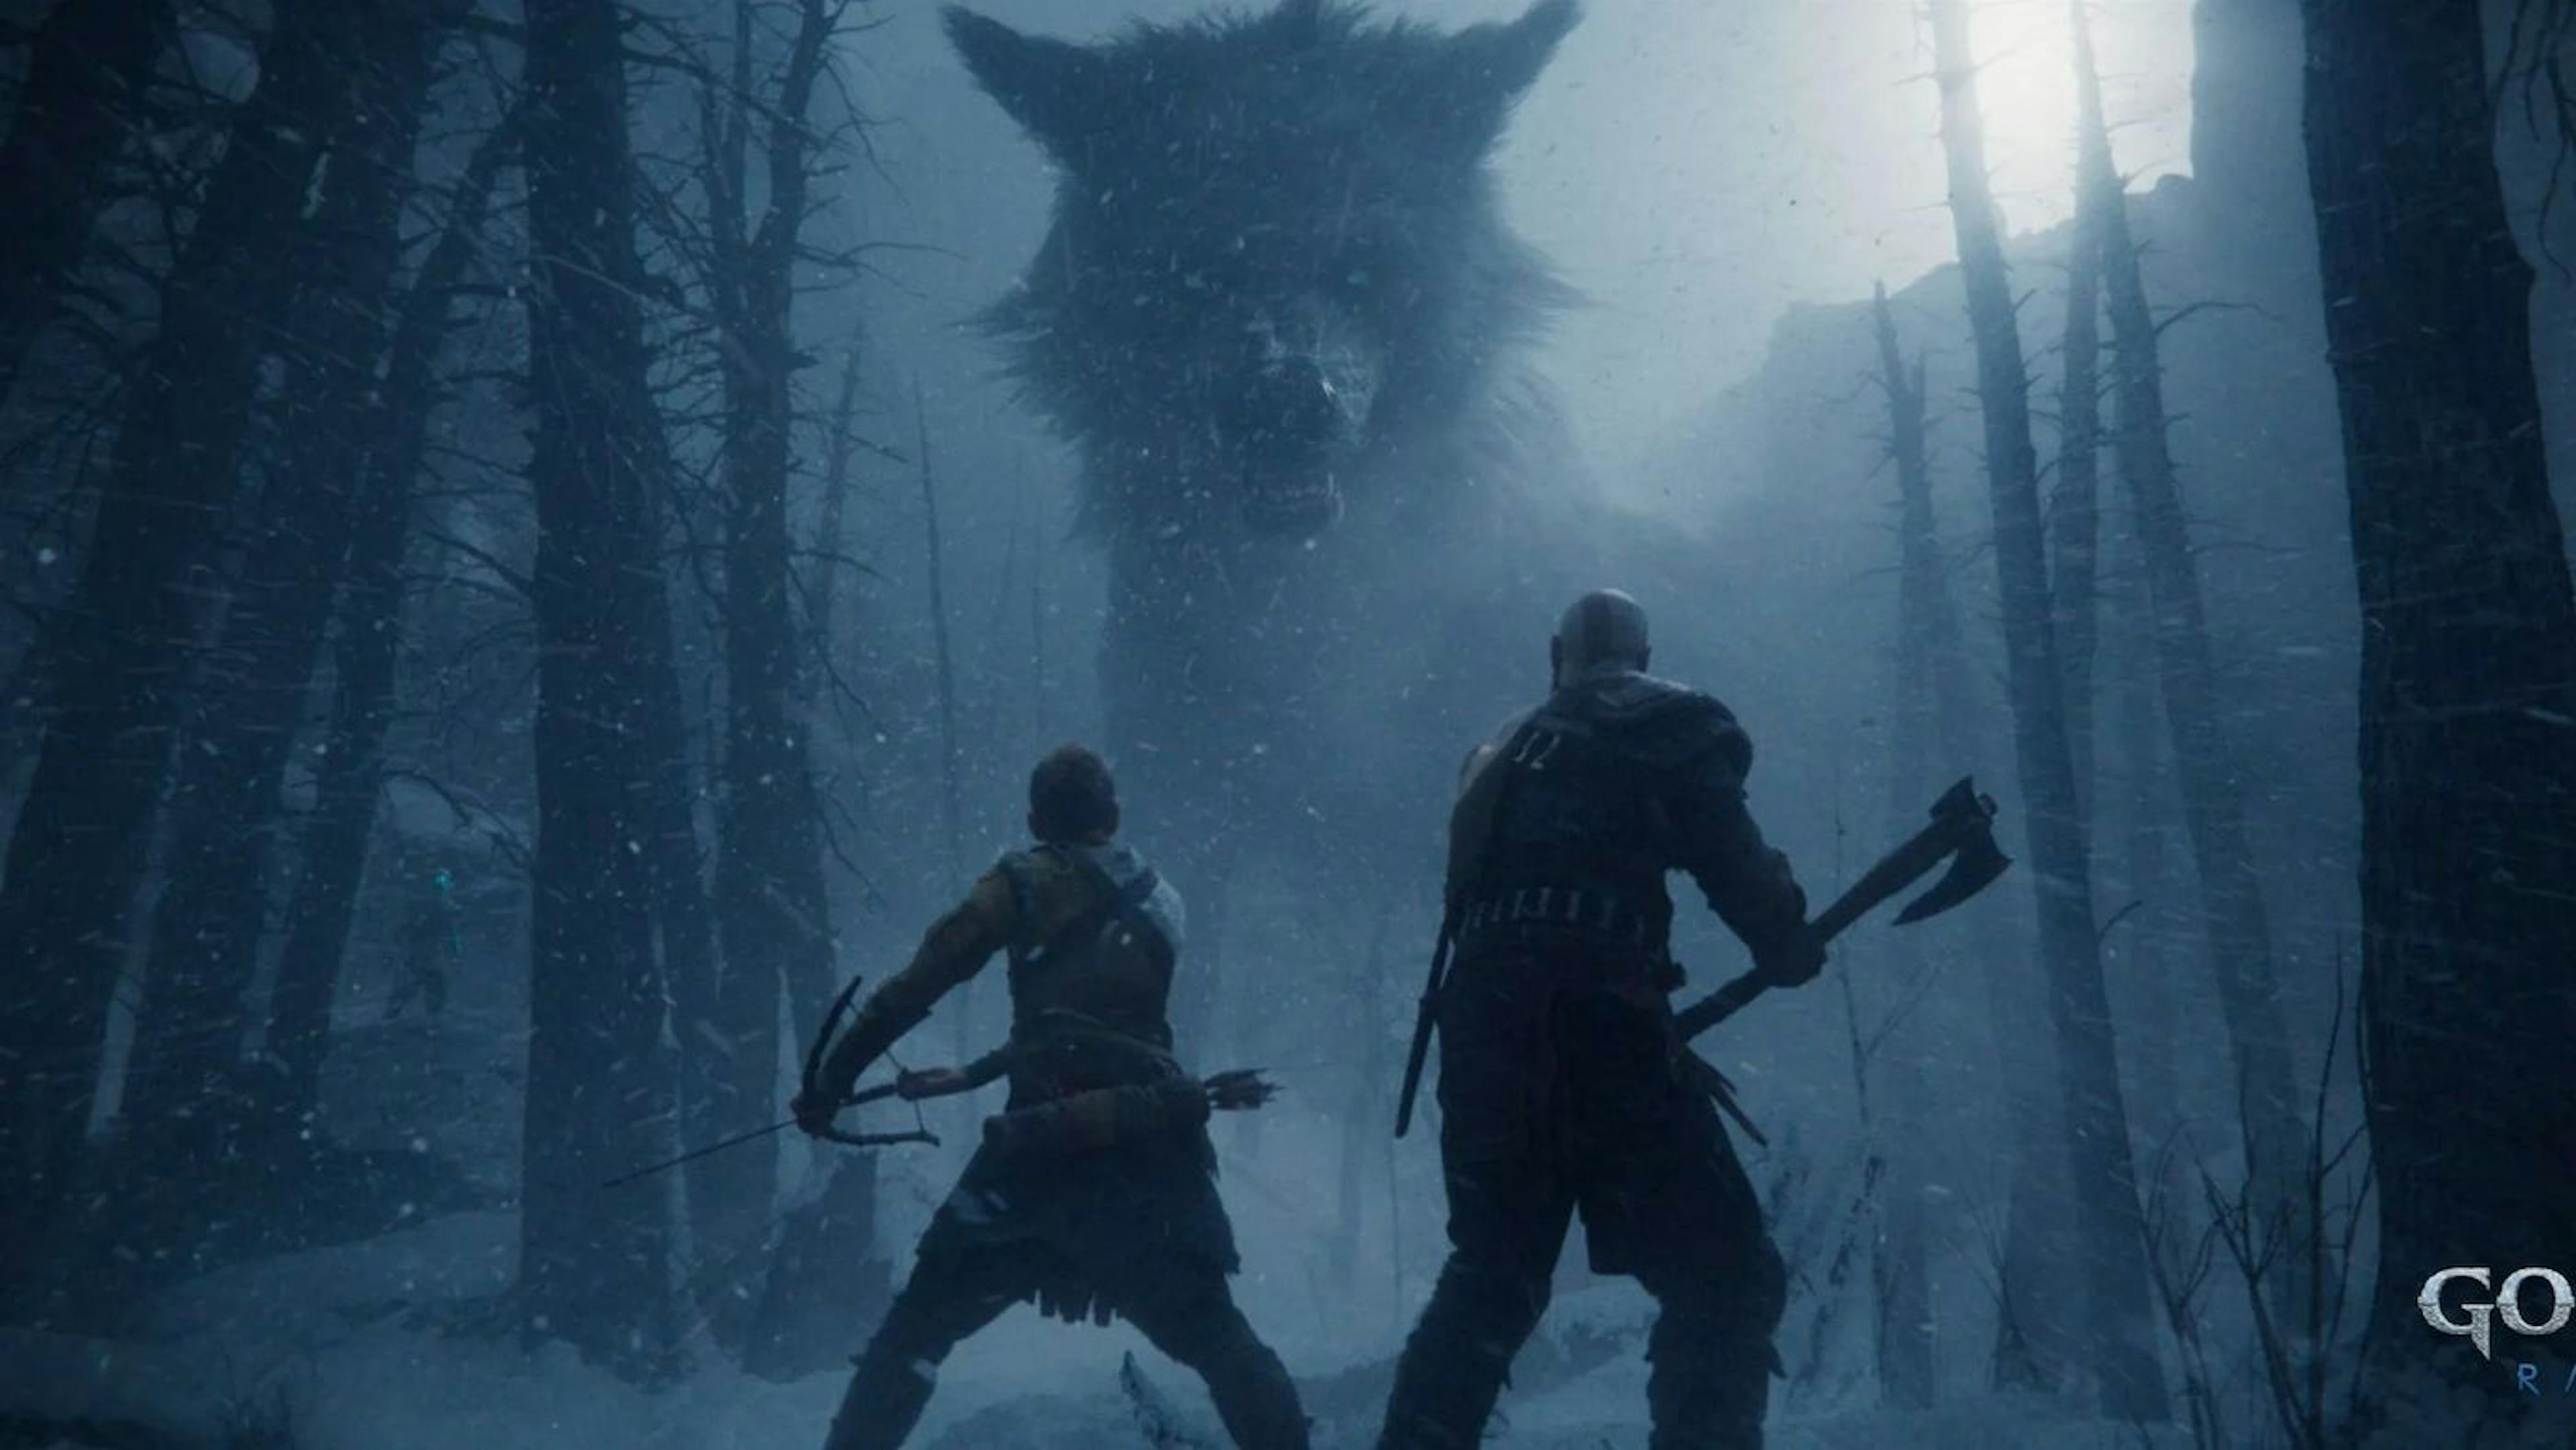 featured image - God of War Ragnarök Arrives in November - New Cinematic Trailer Released